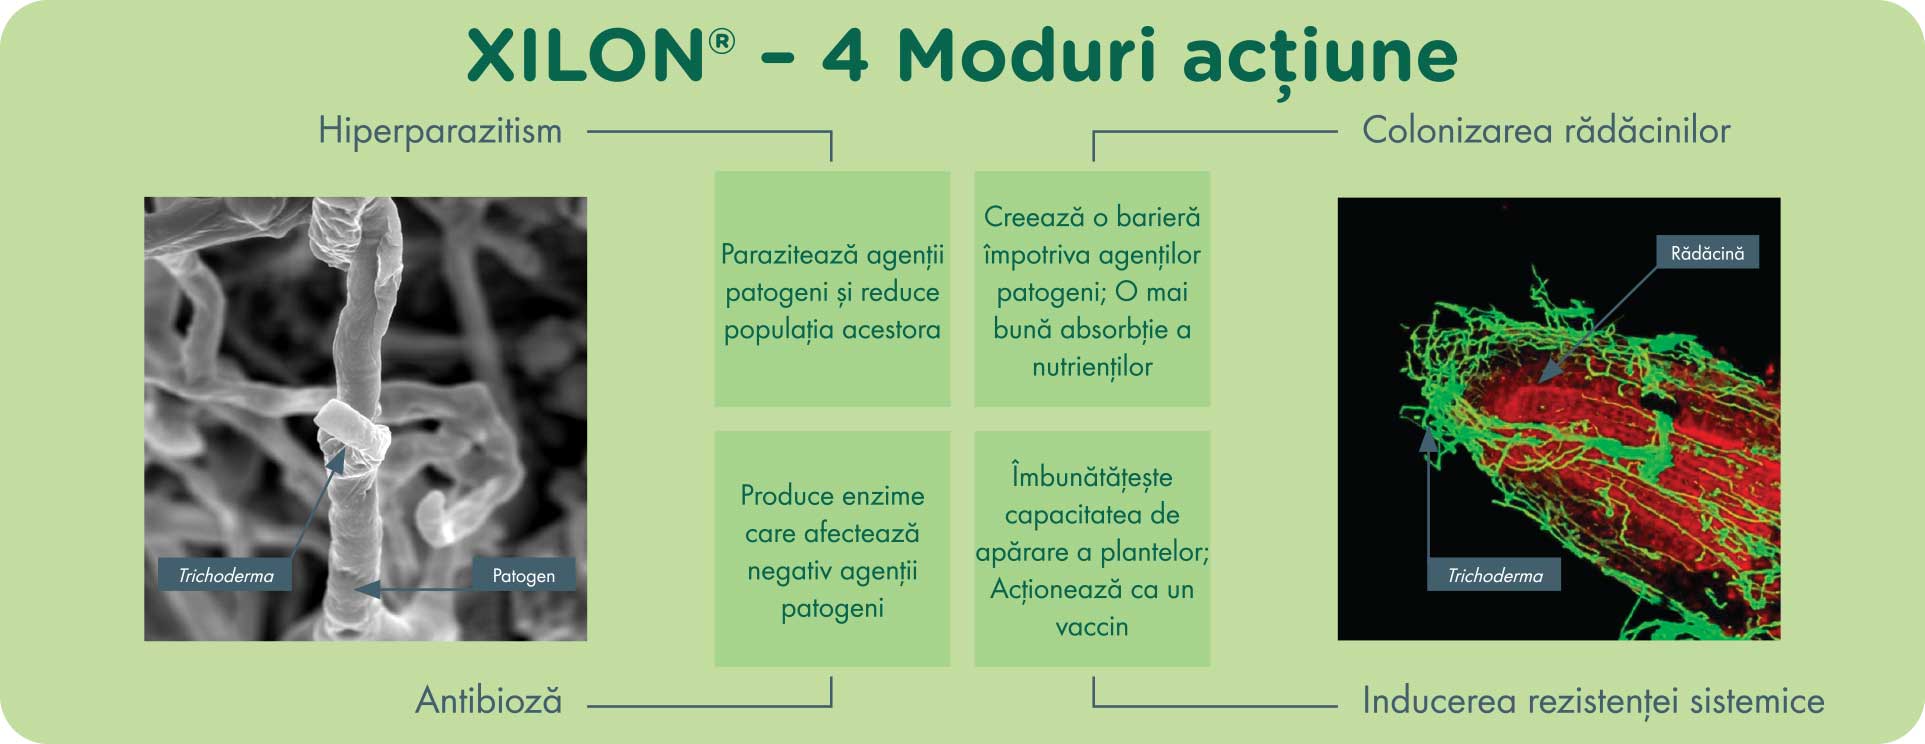 XILON - 4 moduri de acțiune